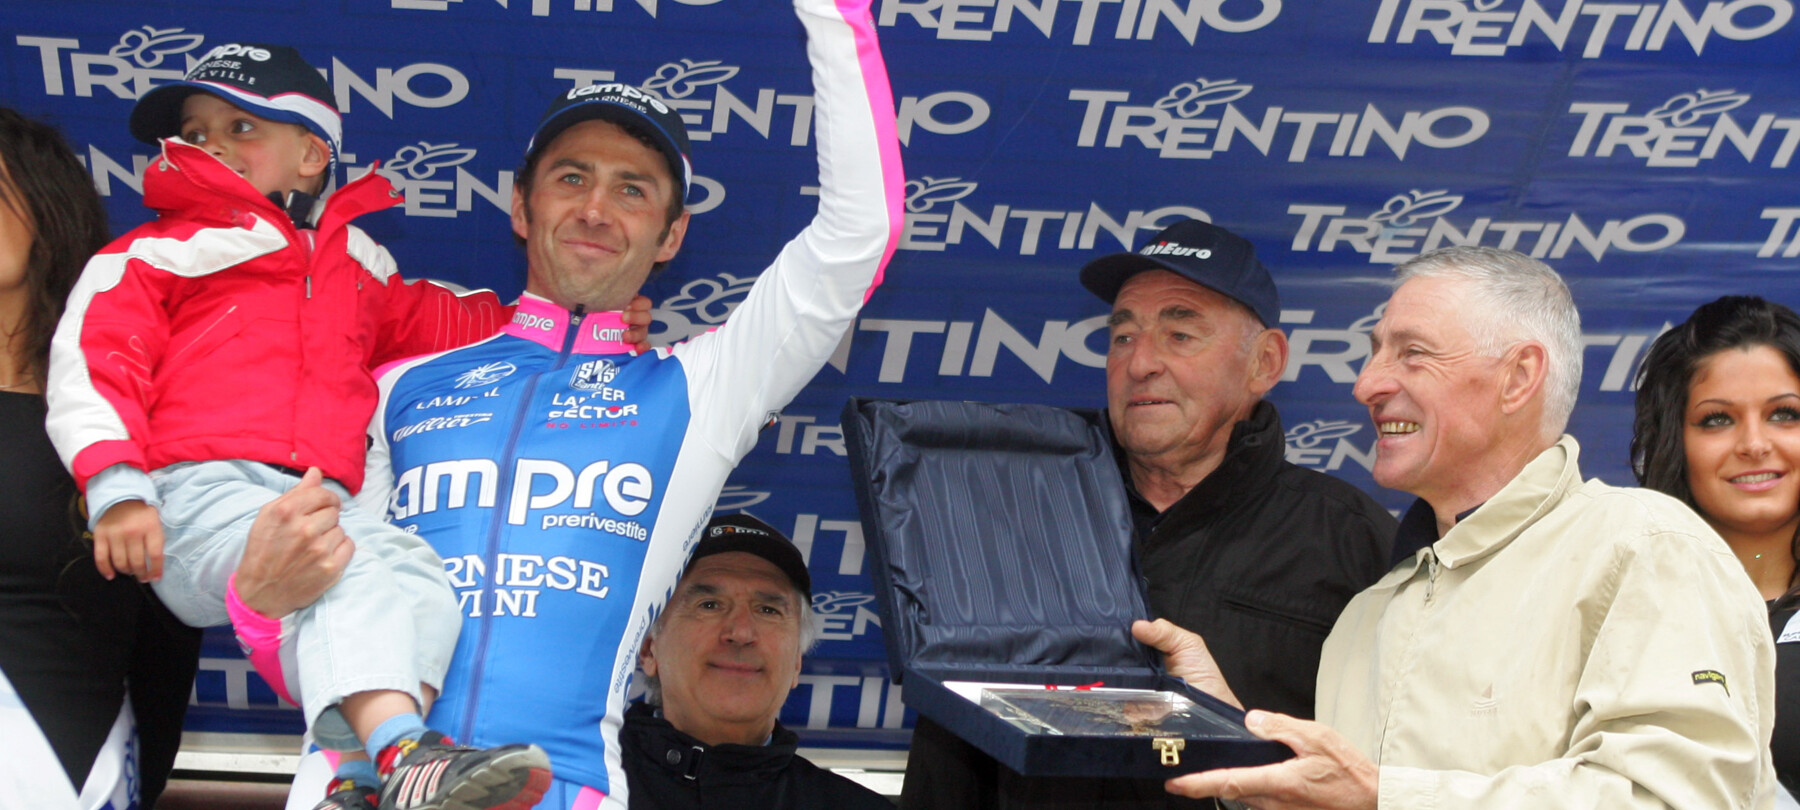 Trentino: land van wielerkampioenen